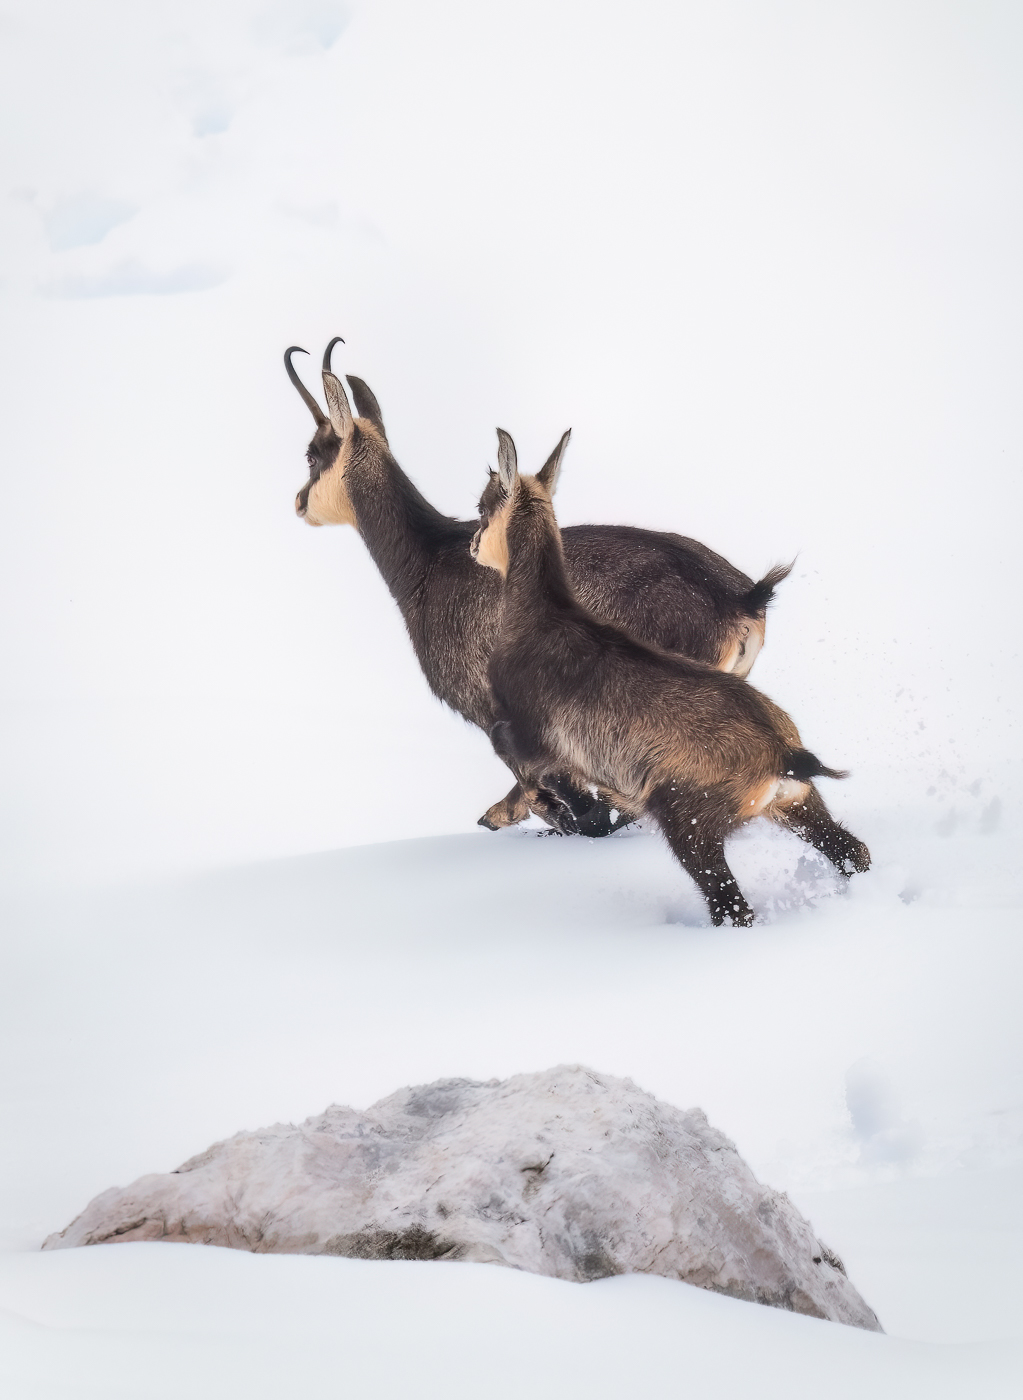 Madre e piccolo di camoscio alpino (Rupicapra rupicapra) fuggono nella neve profonda, immersi in un paesaggio candido e silenzioso. Alpi Giulie, Italia.